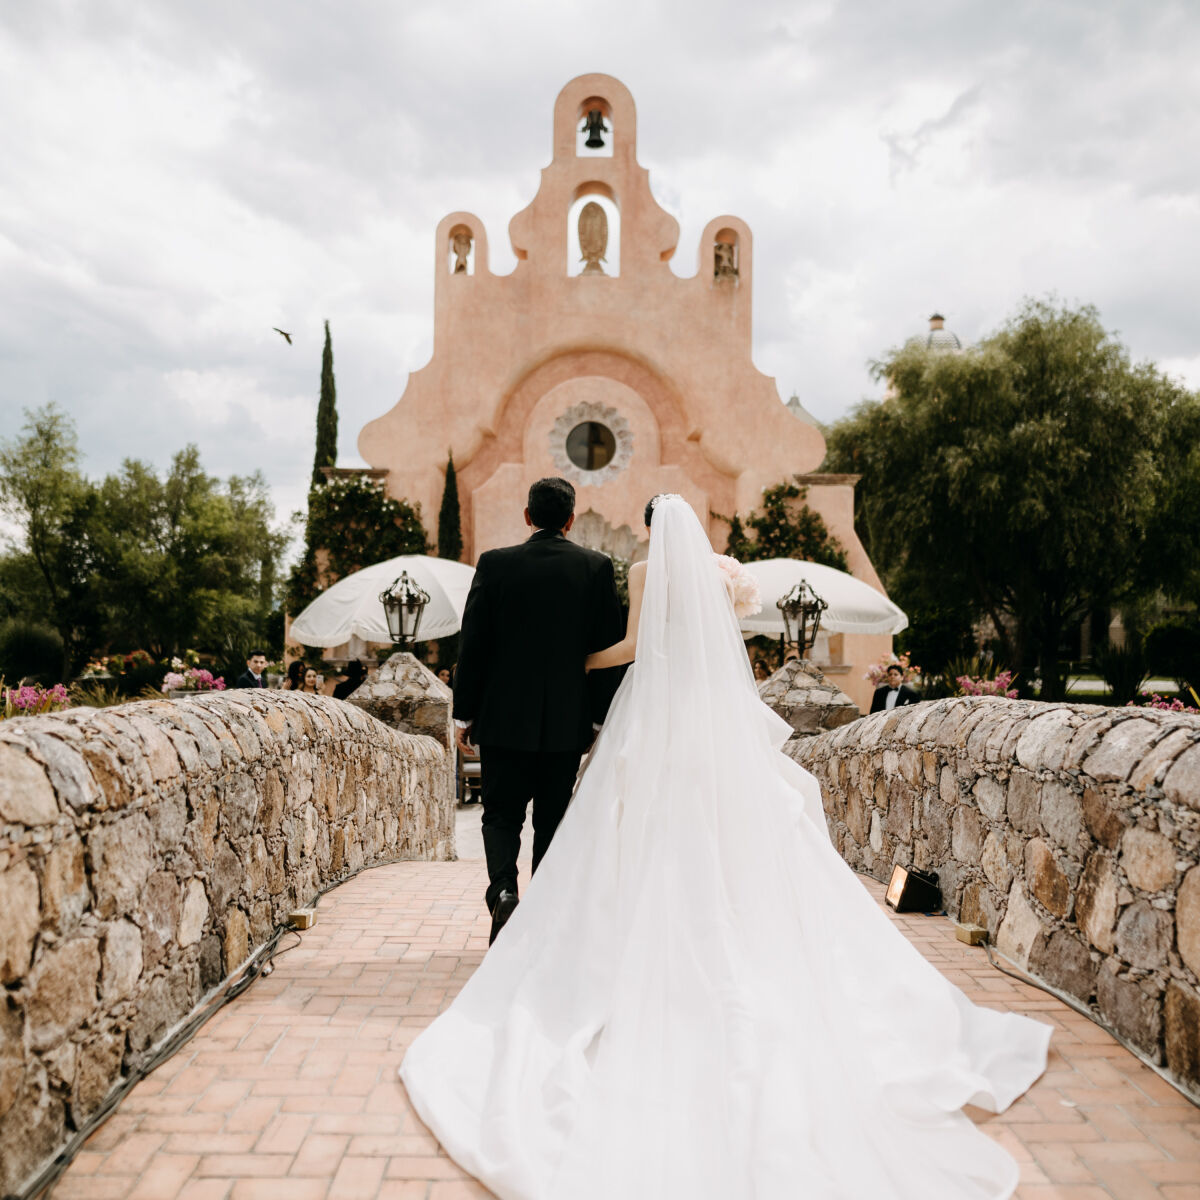 Mexican Wedding Venues | Mexico Wedding Venue | Mexico Weddings